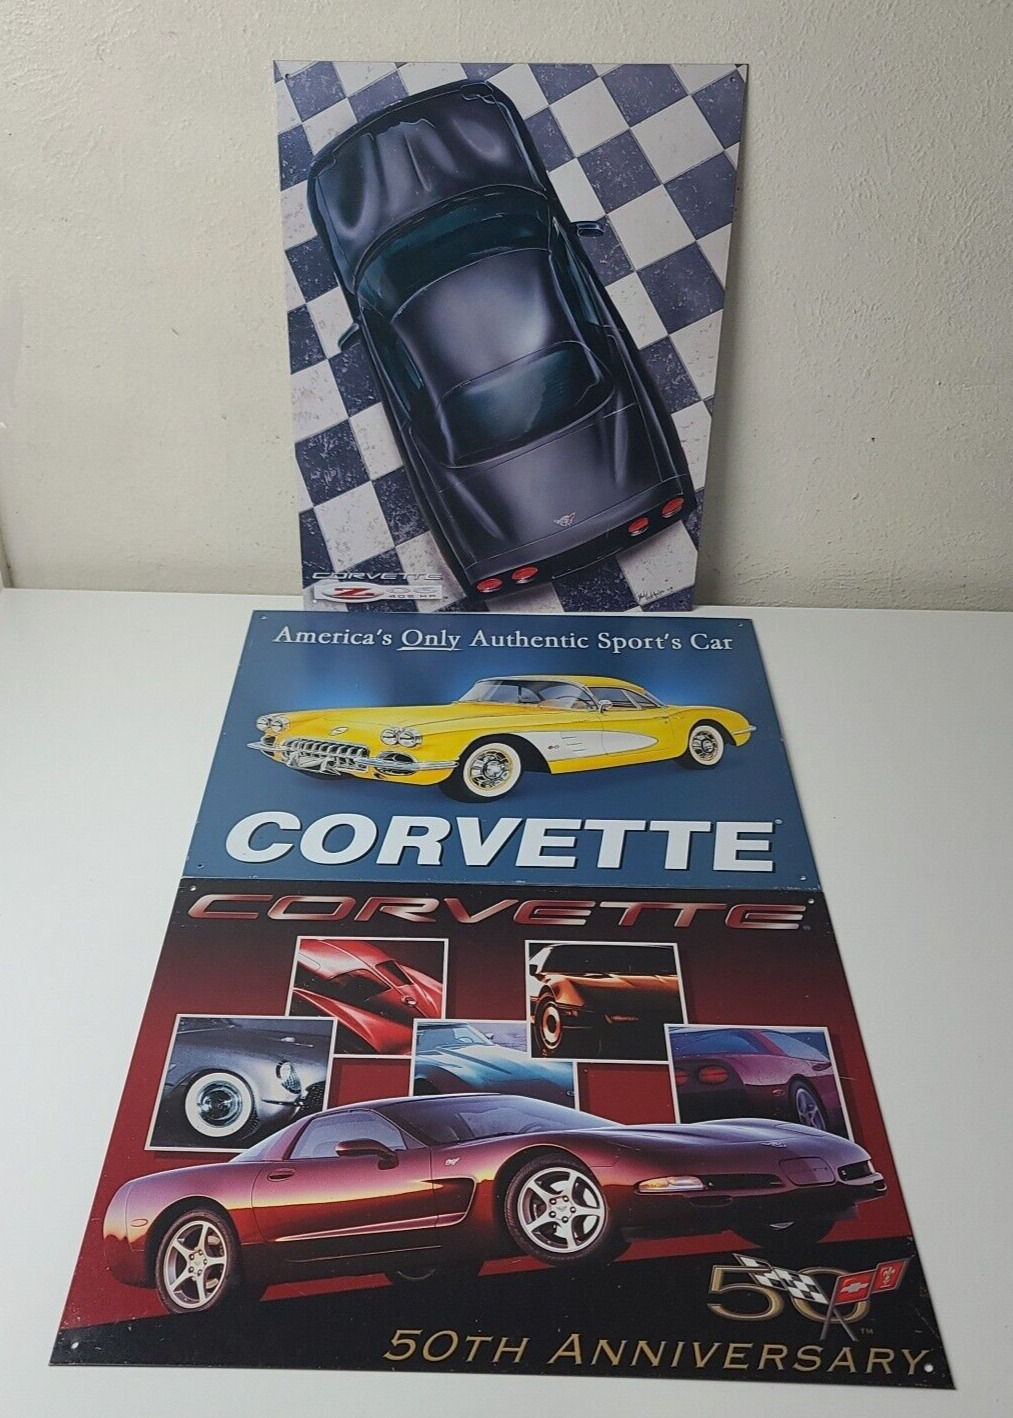 Desperate Enterprises Licensed Corvette Metal Sign Lot of 3 Vintage Look